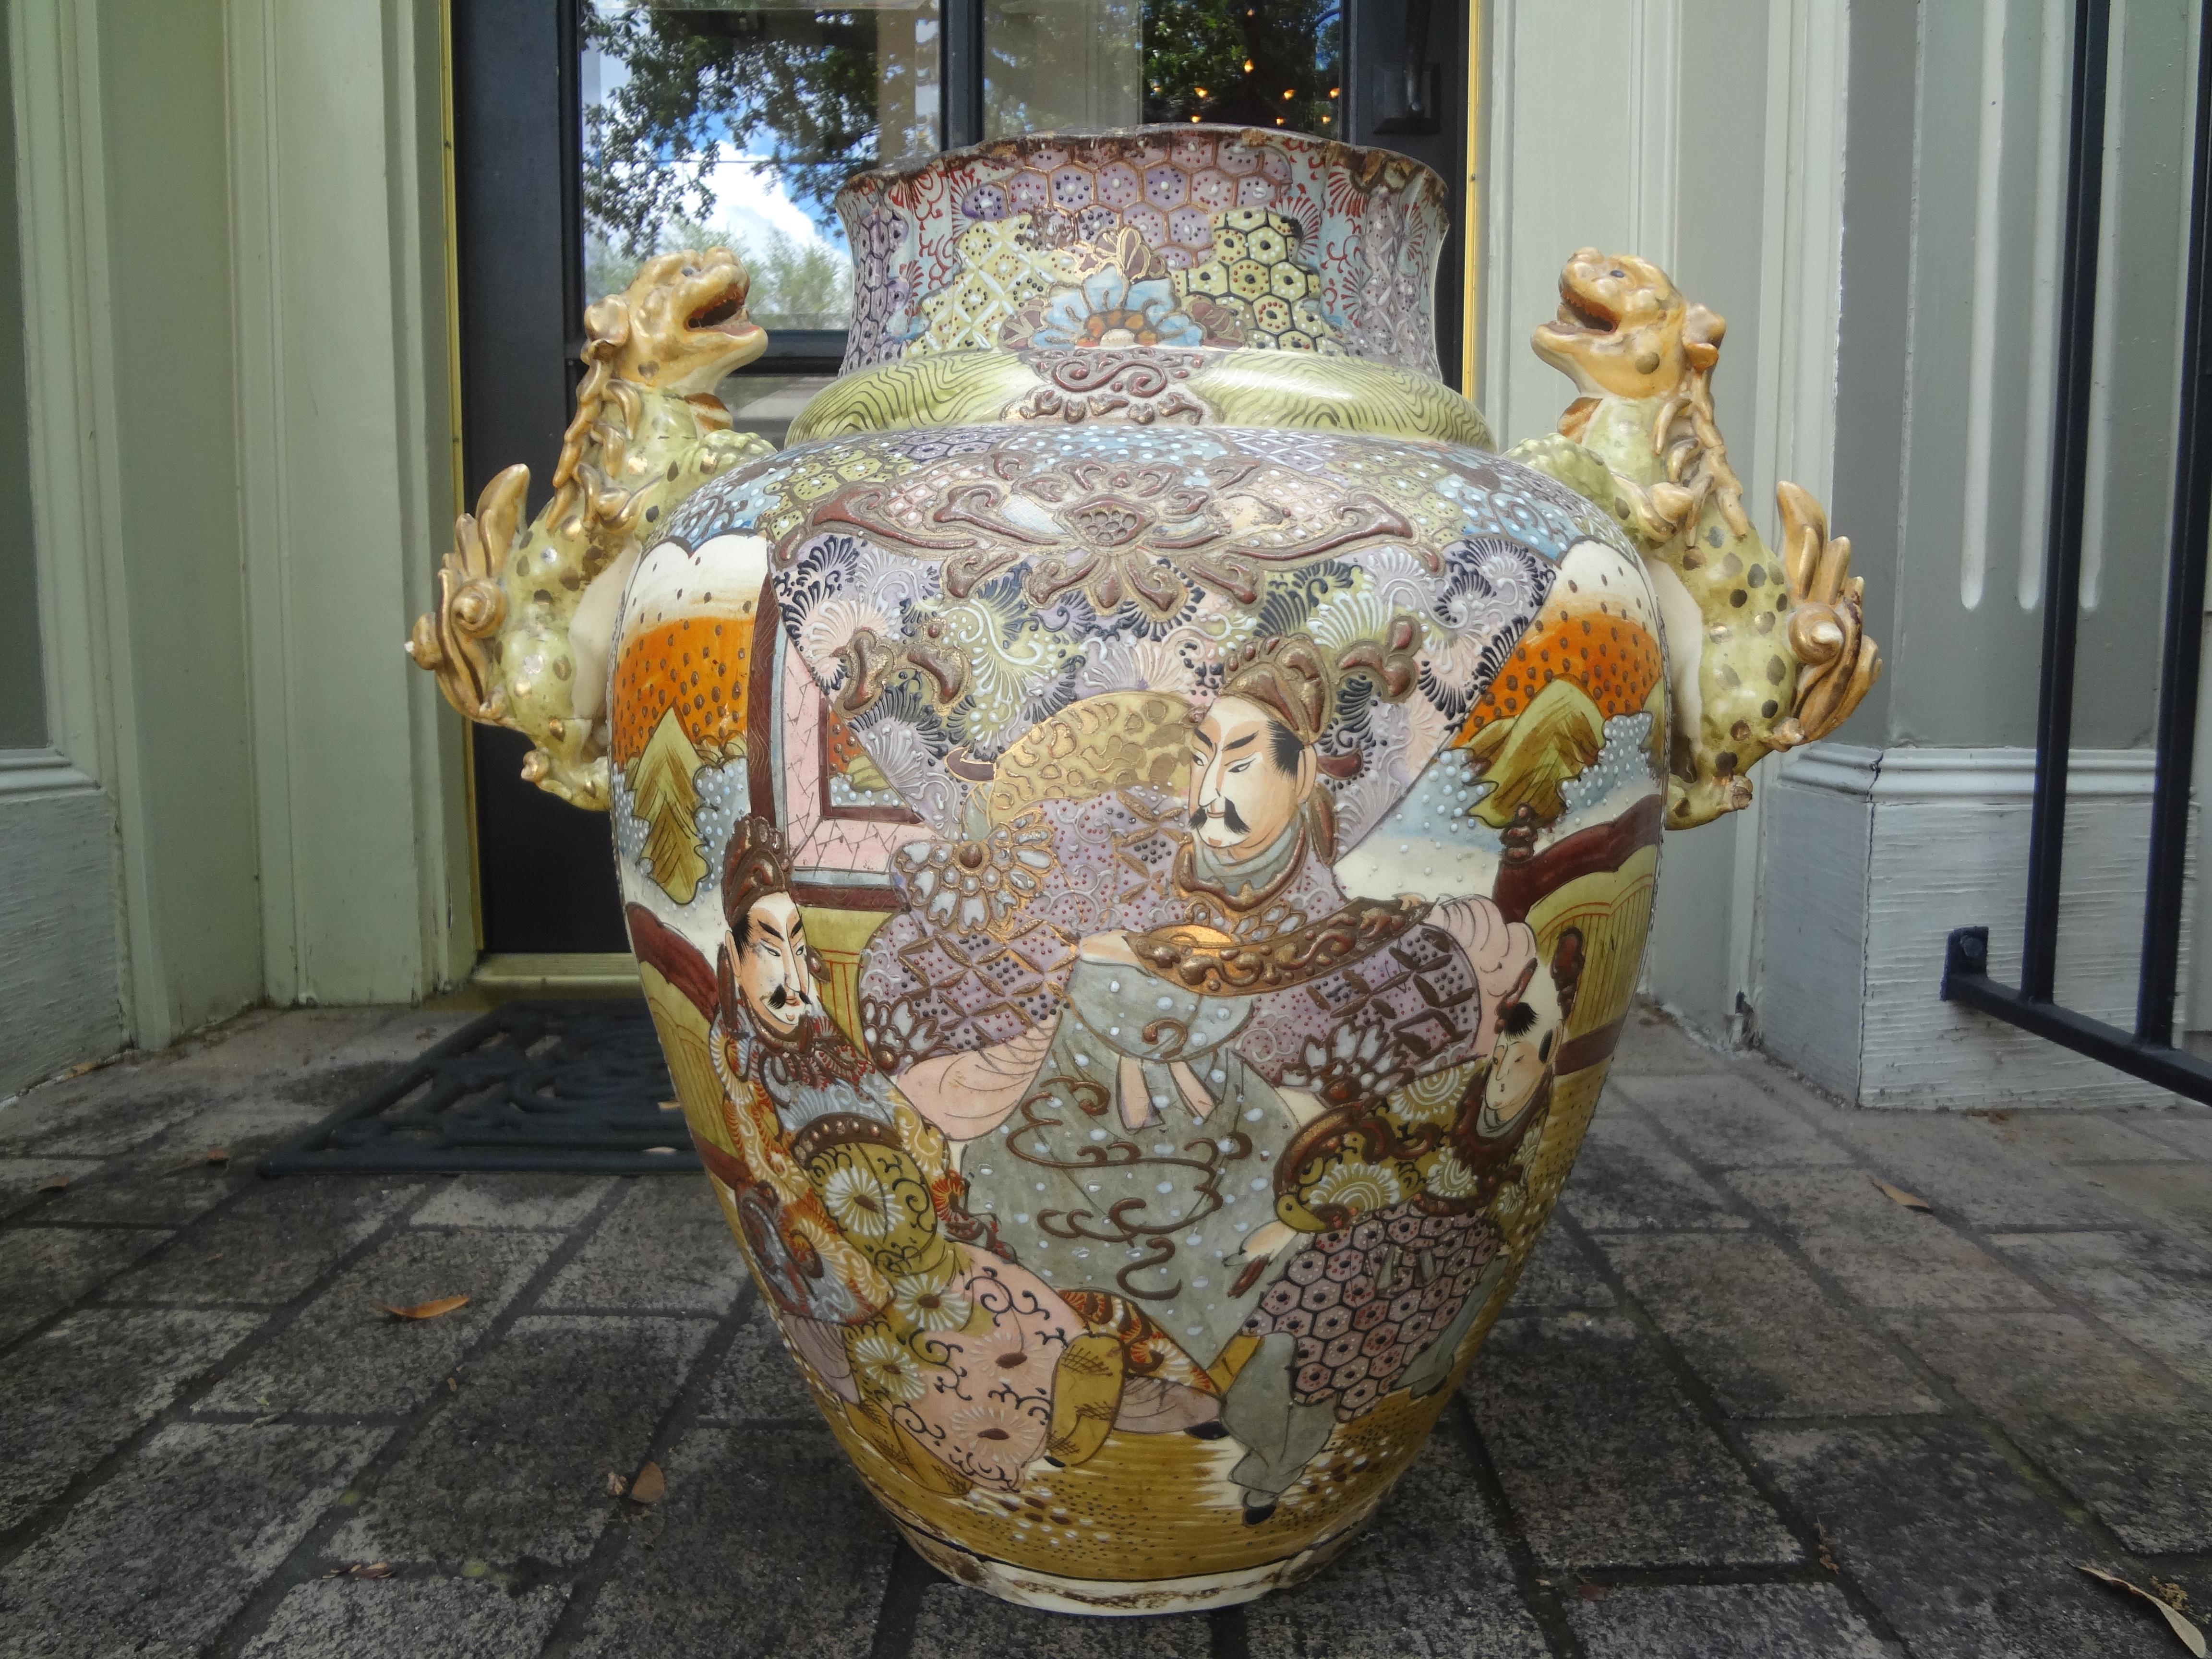 Japanische Meiji-Palast-Urne des 19. Jahrhunderts mit Foo-Dog-Griff.
Wunderschöne große antike japanische Palasturne aus der Meiji-Periode mit Foo-Dog-Griff. Diese wunderschöne Urne im asiatischen Satsuma-Stil ist in ungewöhnlichen, erhabenen